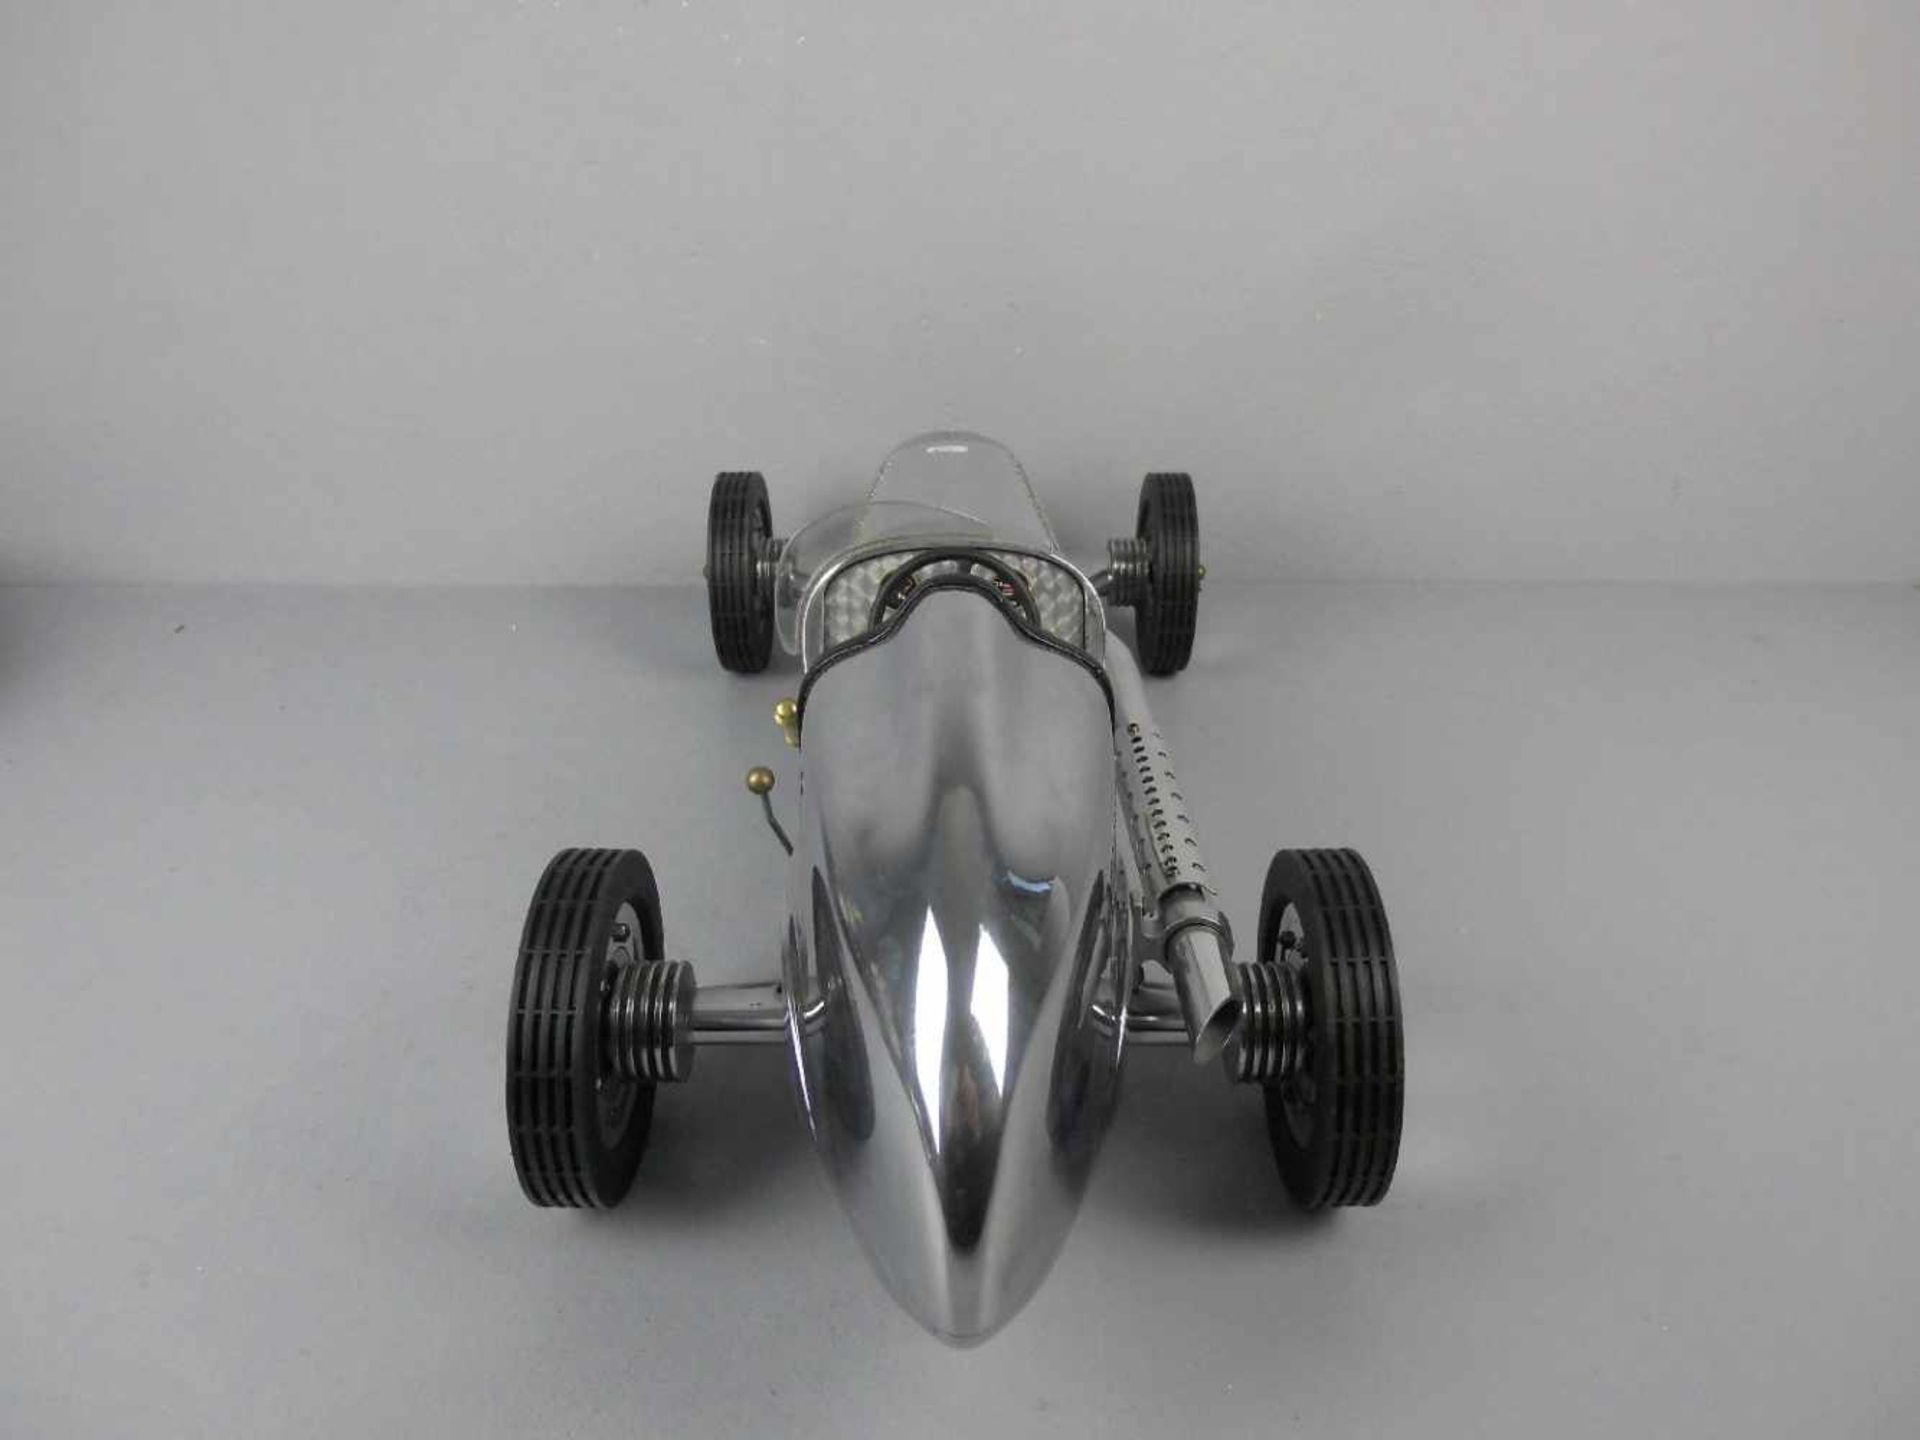 MODELL - AUTO: Mercedes Silberpfeil W 25 von 1934 / Grand Prix Model Car, unter dem Stand gemarkt " - Image 3 of 6